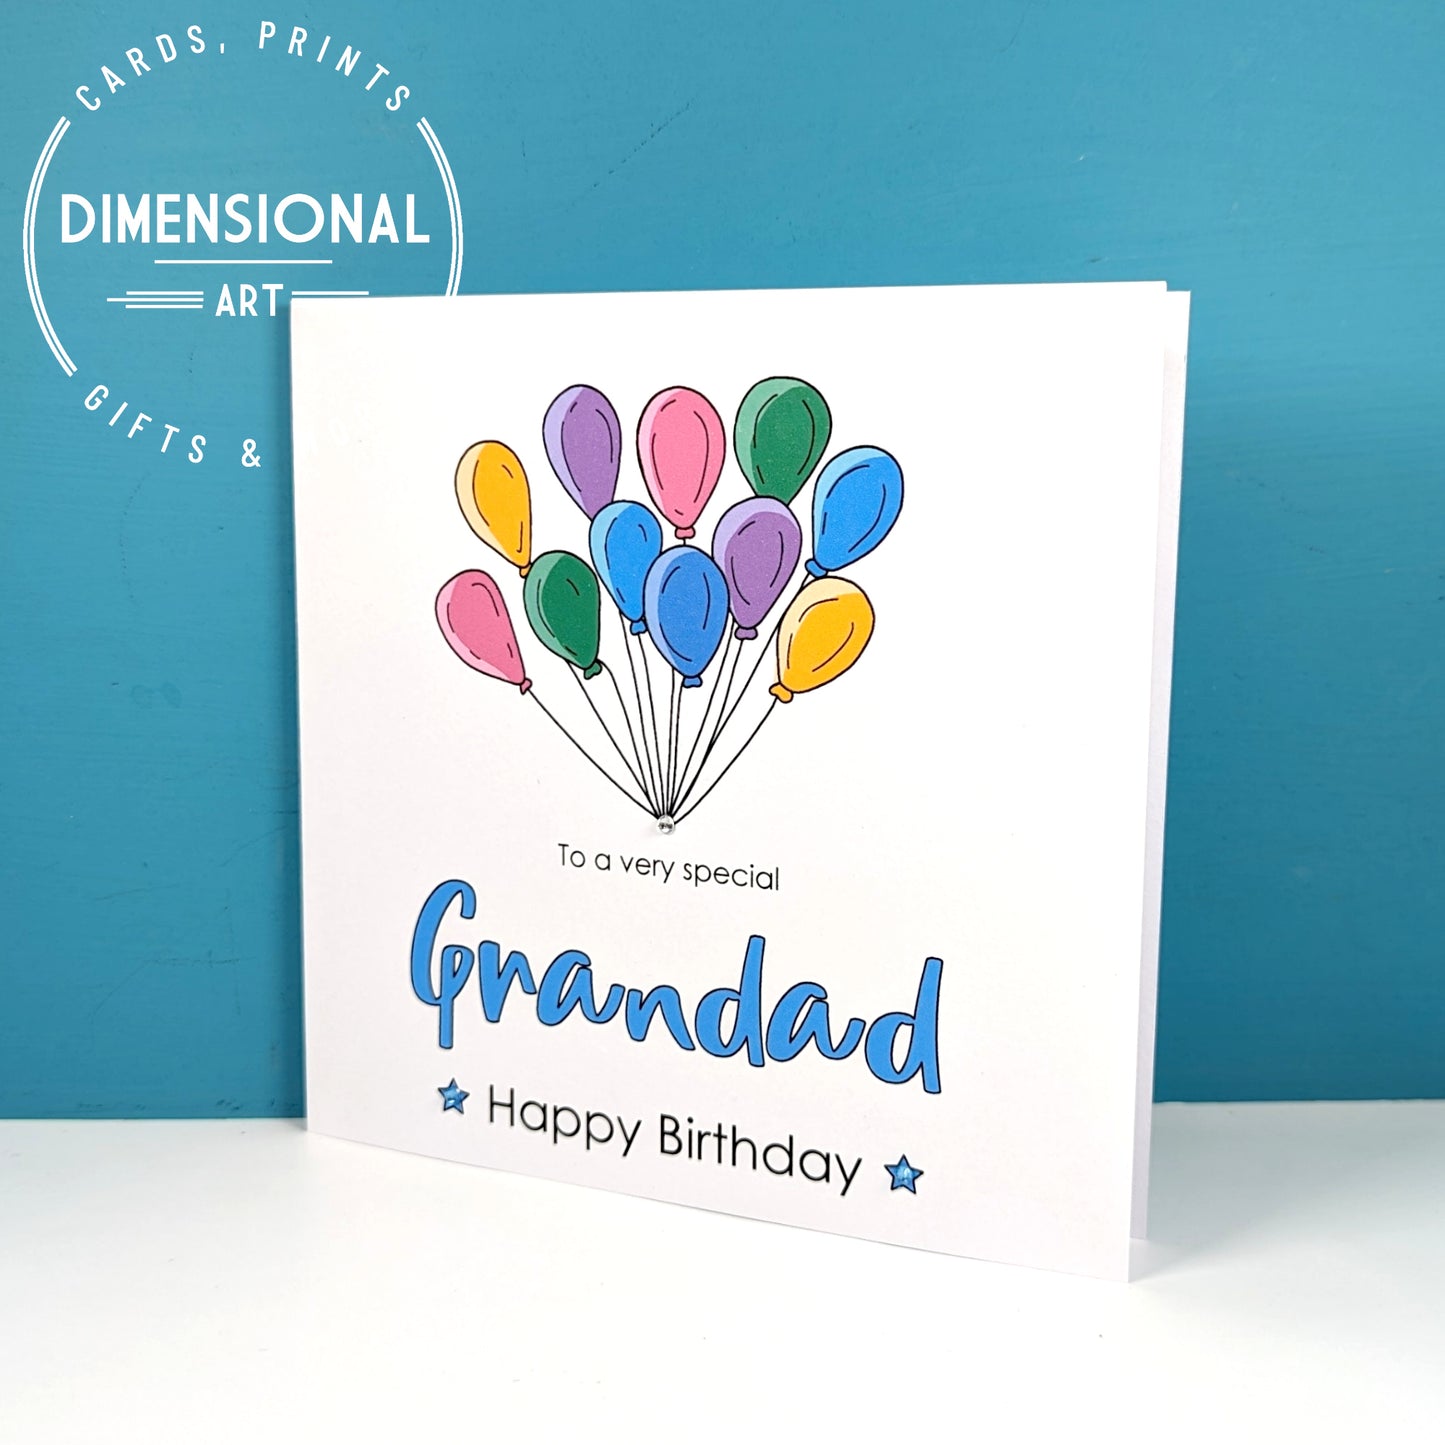 GRANDAD Birthday Card